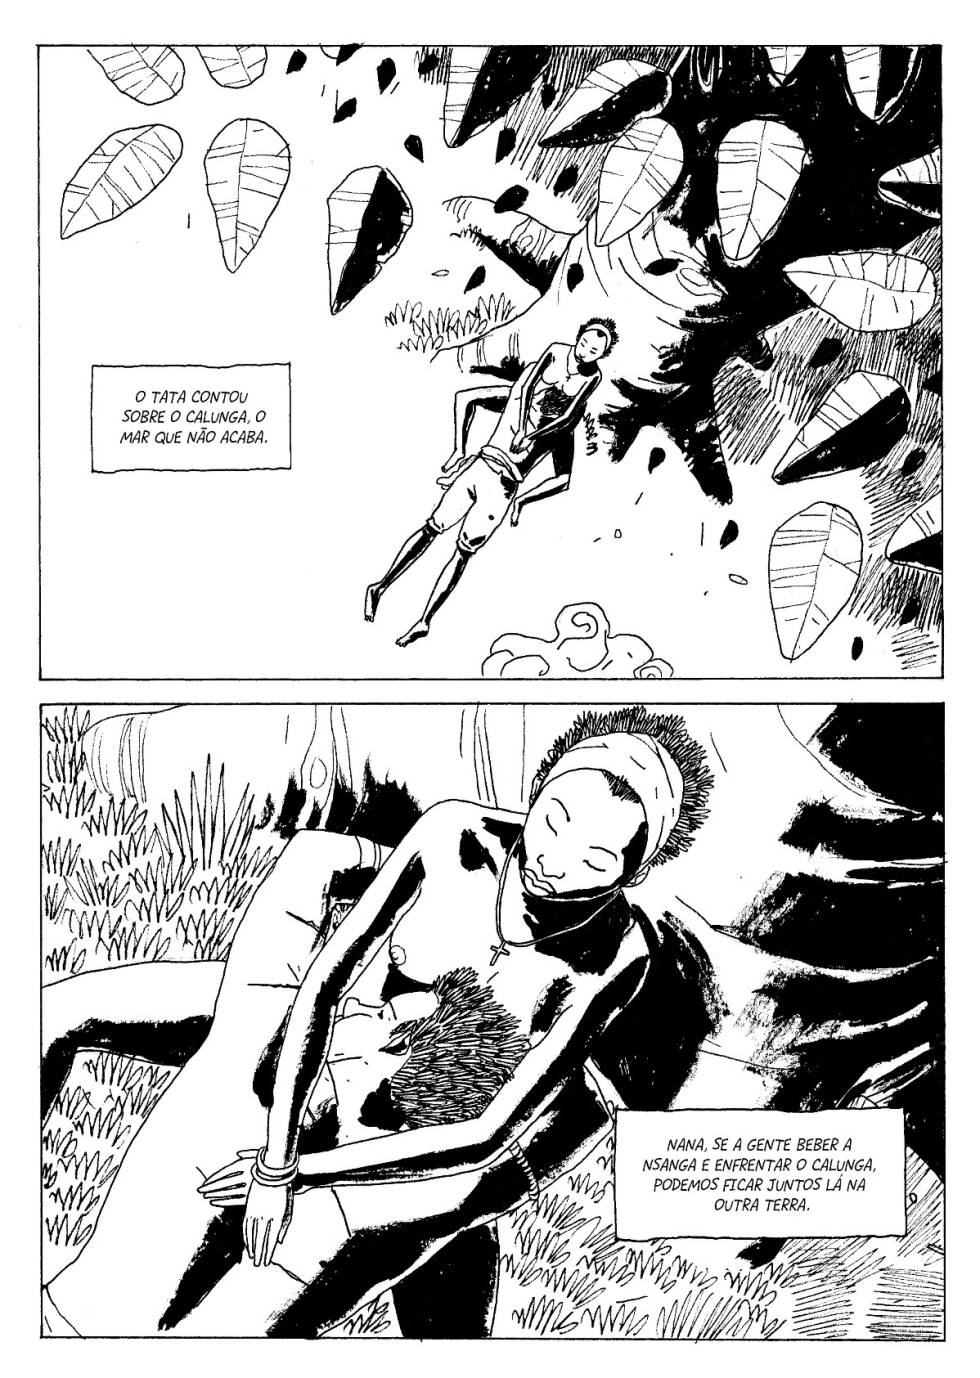 Reprodução de uma das páginas dos quadrinhos.